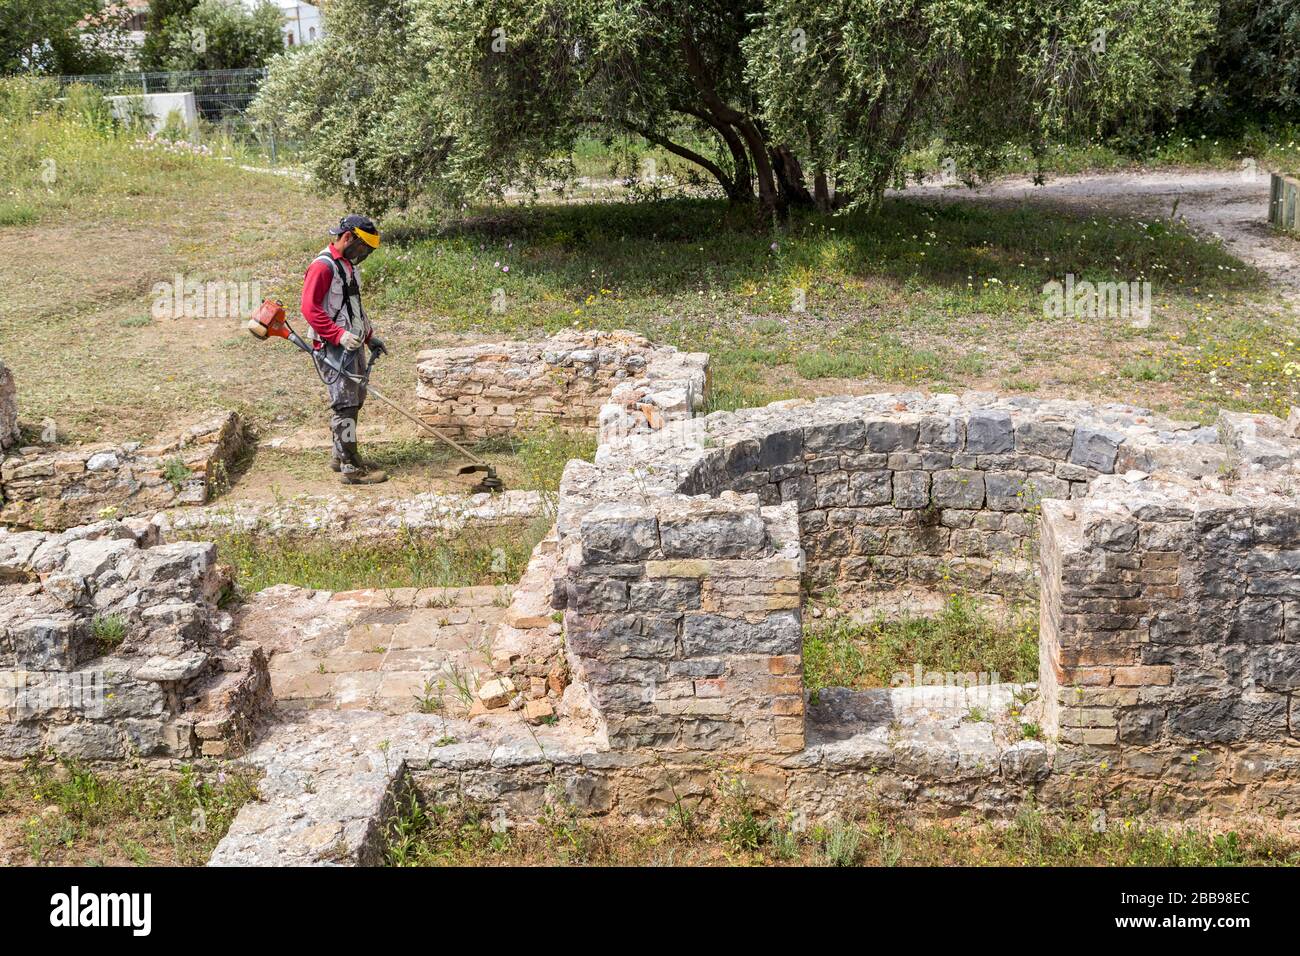 Wokman a foulé des mauvaises herbes aux ruines romaines, Milreu, Algarve, Portugal Banque D'Images